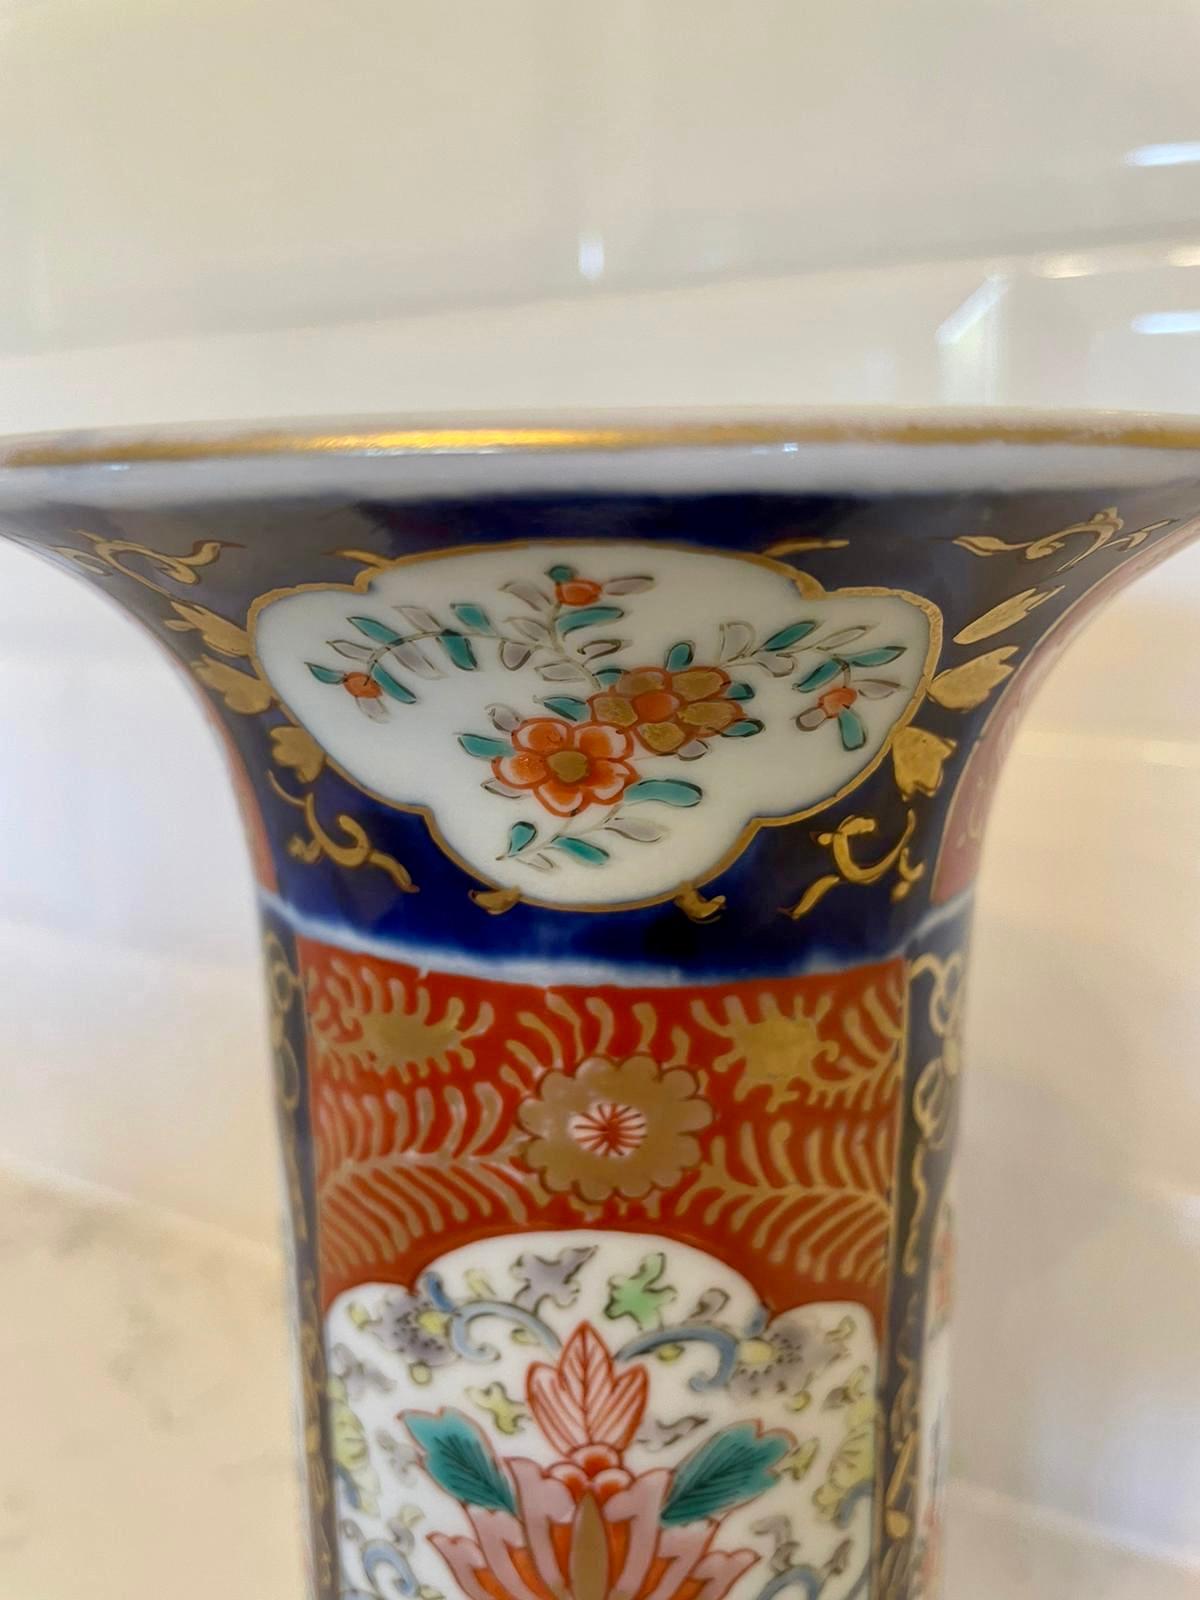 Vase Imari antique de qualité présentant des panneaux peints à la main avec des fleurs, des feuilles et des chiens et peints à la main dans de fantastiques couleurs rouge, bleu, vert, jaune et or.

En très bon état d'origine.

Mesures : H